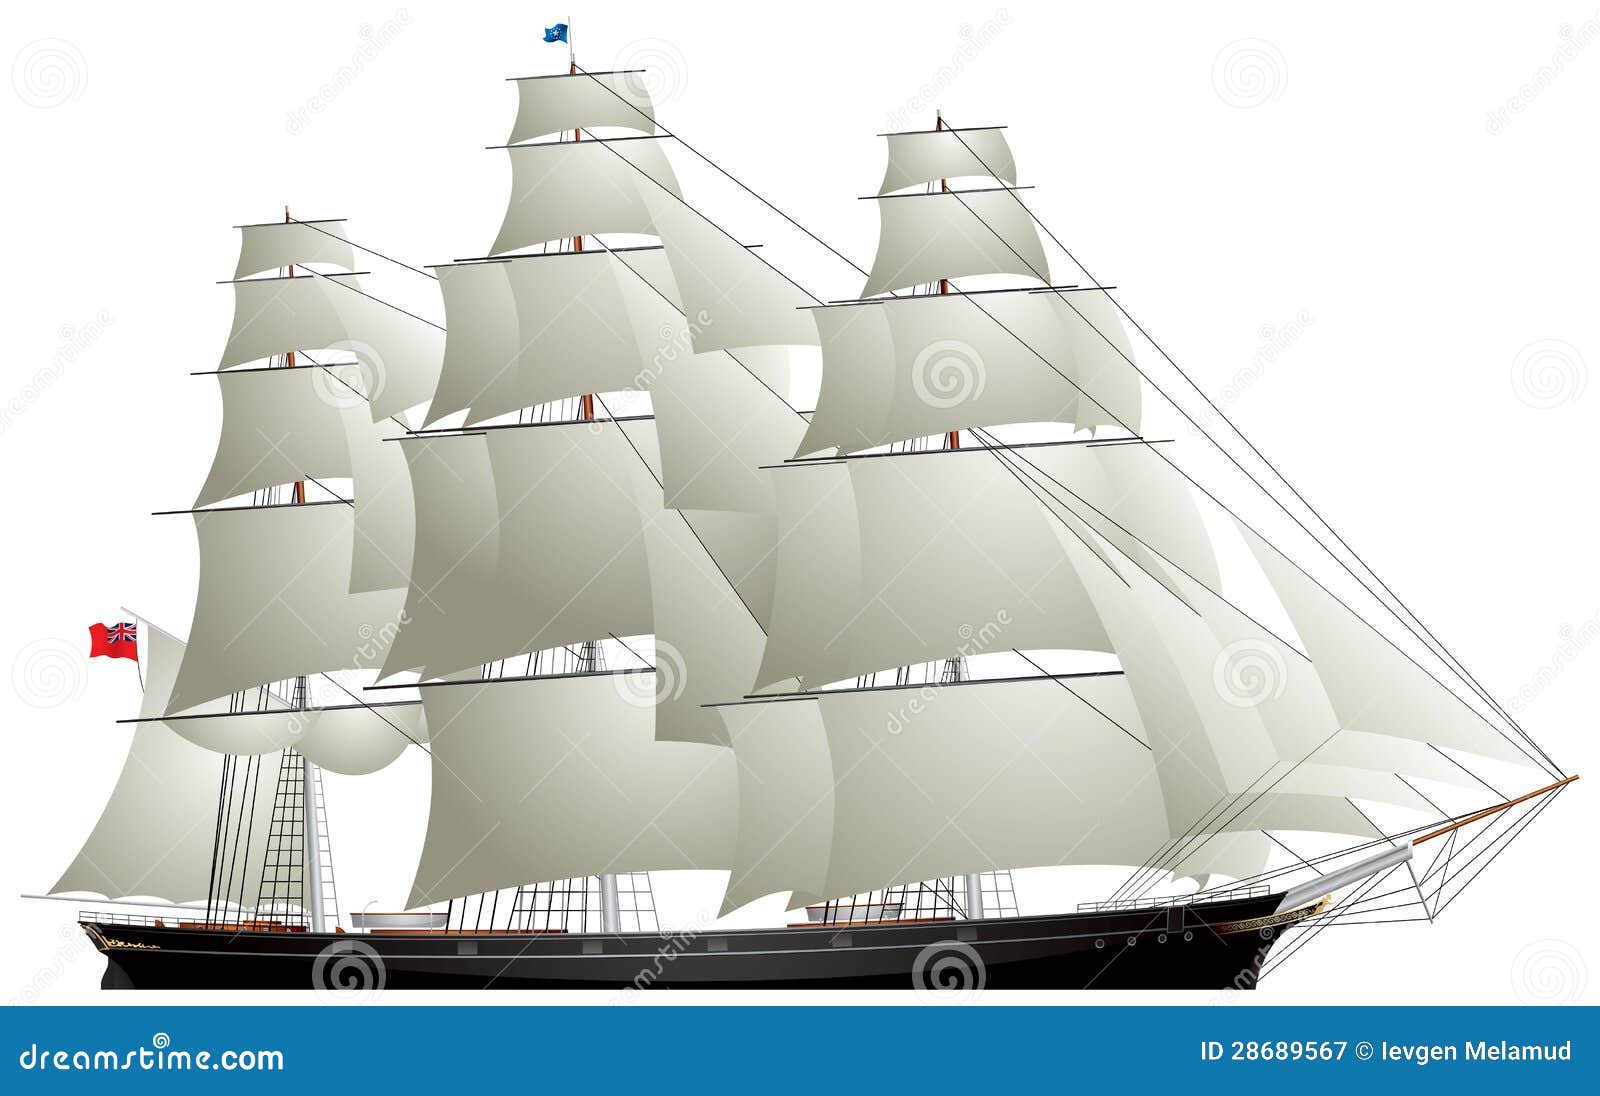 clipper sailing ship, tea clipper